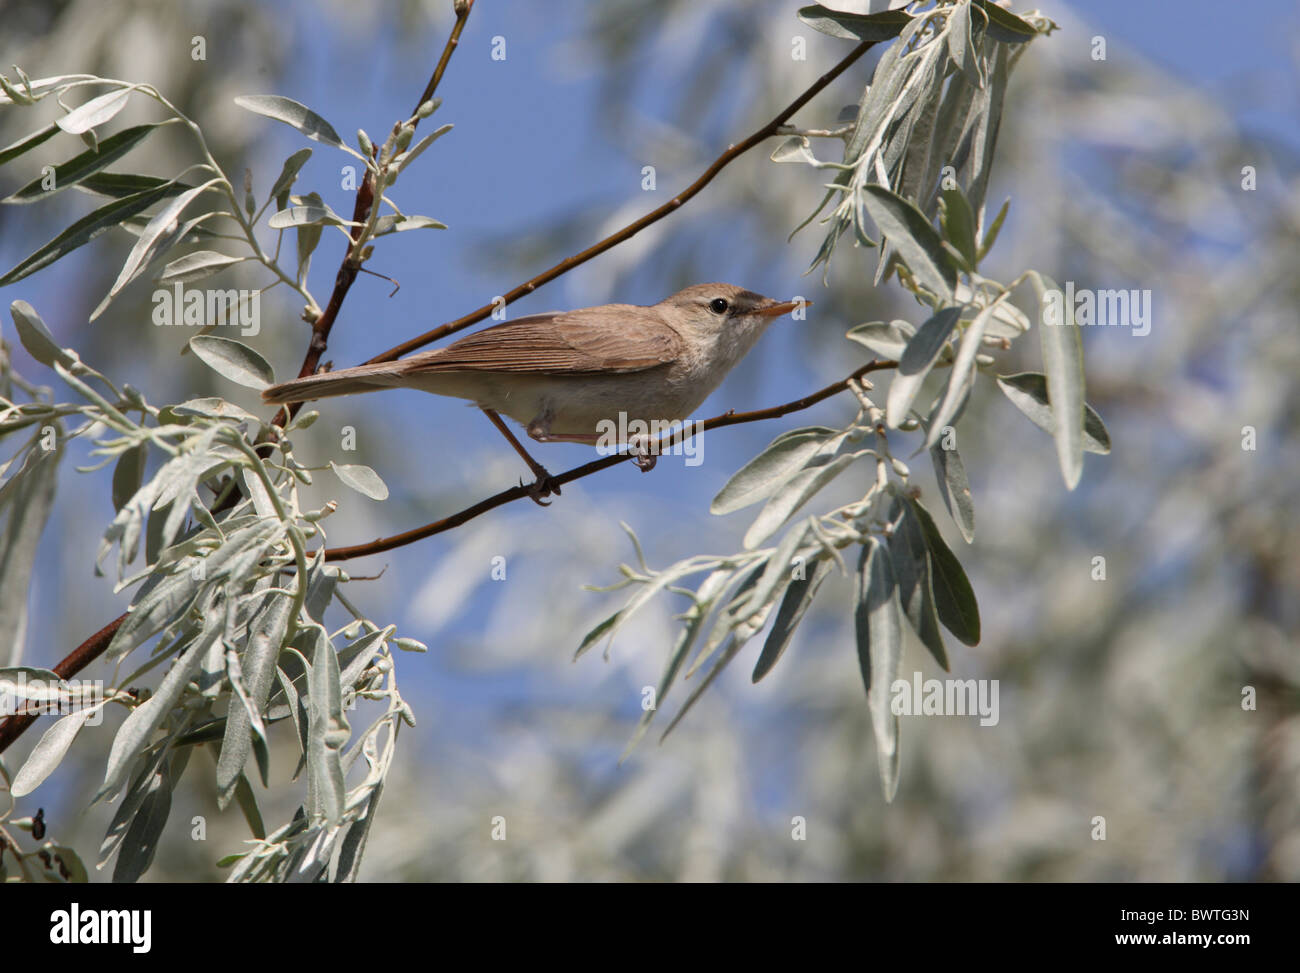 Sykes's Warbler (Hippolais rama) adulte, perché dans l'arbre, Almaty, Kazakhstan, Province de juin Banque D'Images